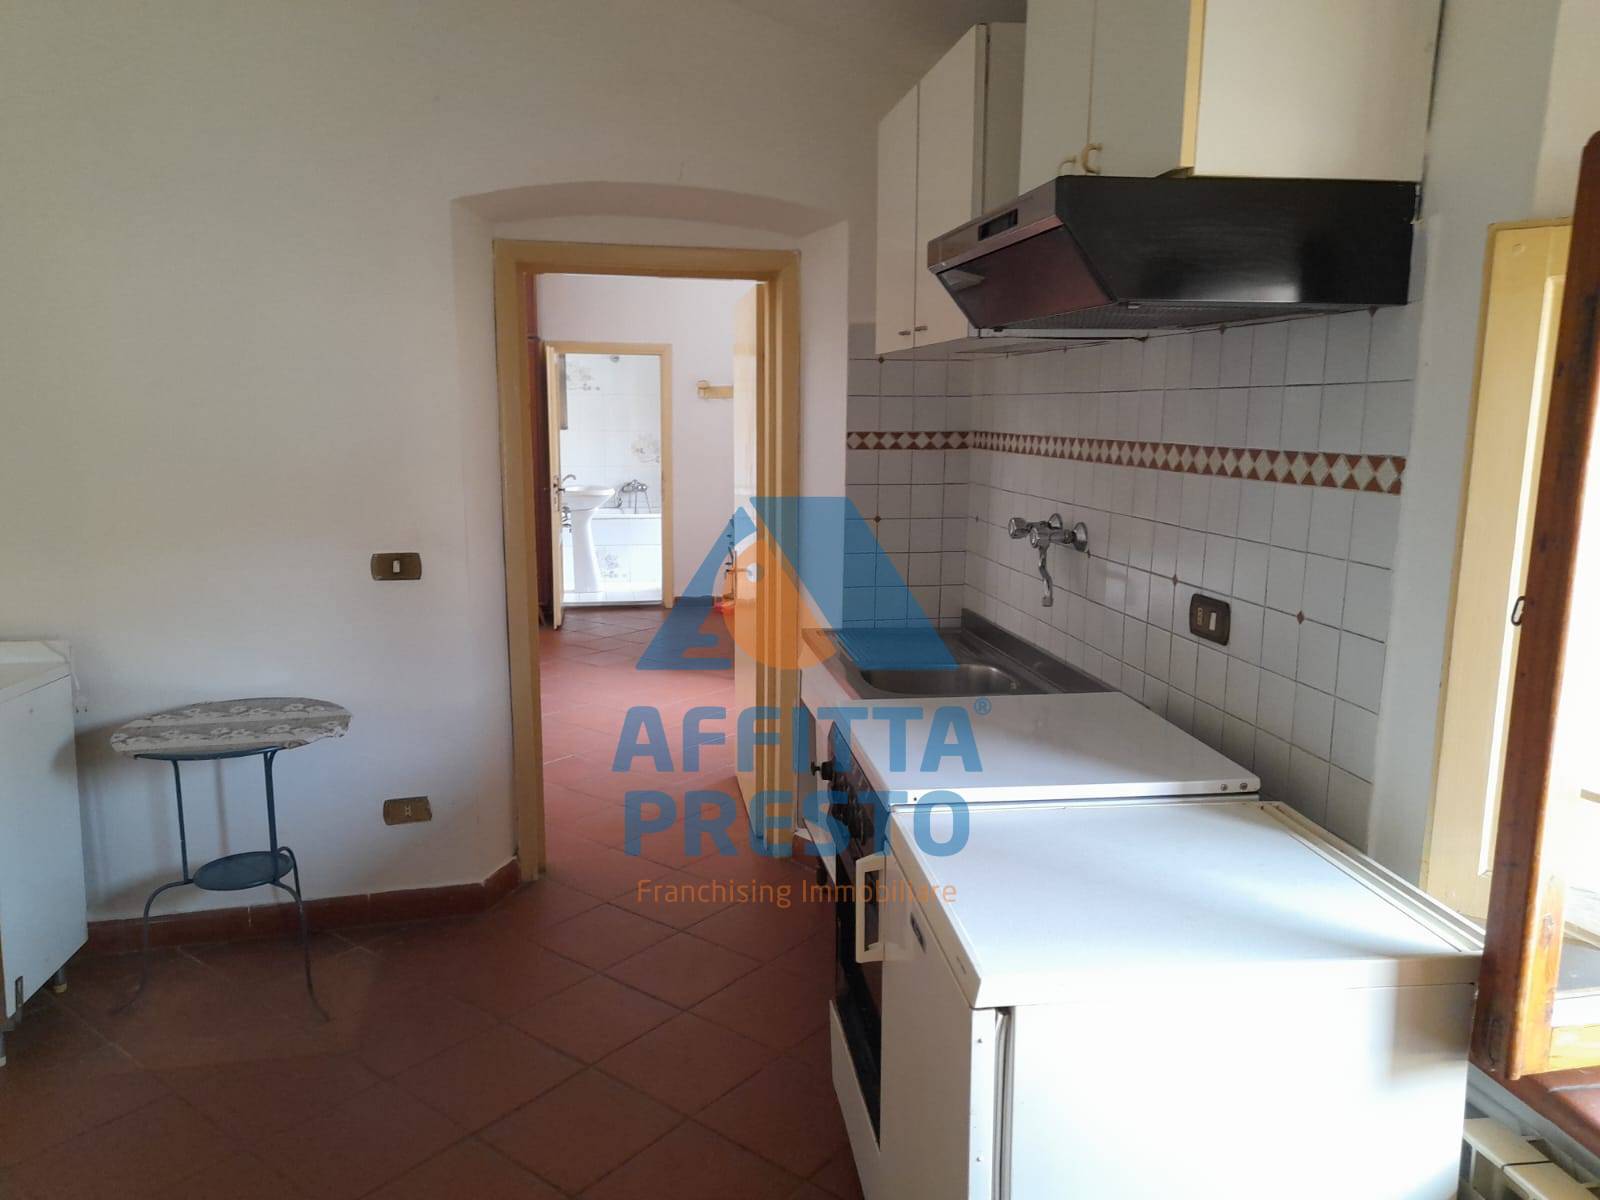 Appartamento in affitto a Montespertoli, 2 locali, prezzo € 435 | PortaleAgenzieImmobiliari.it